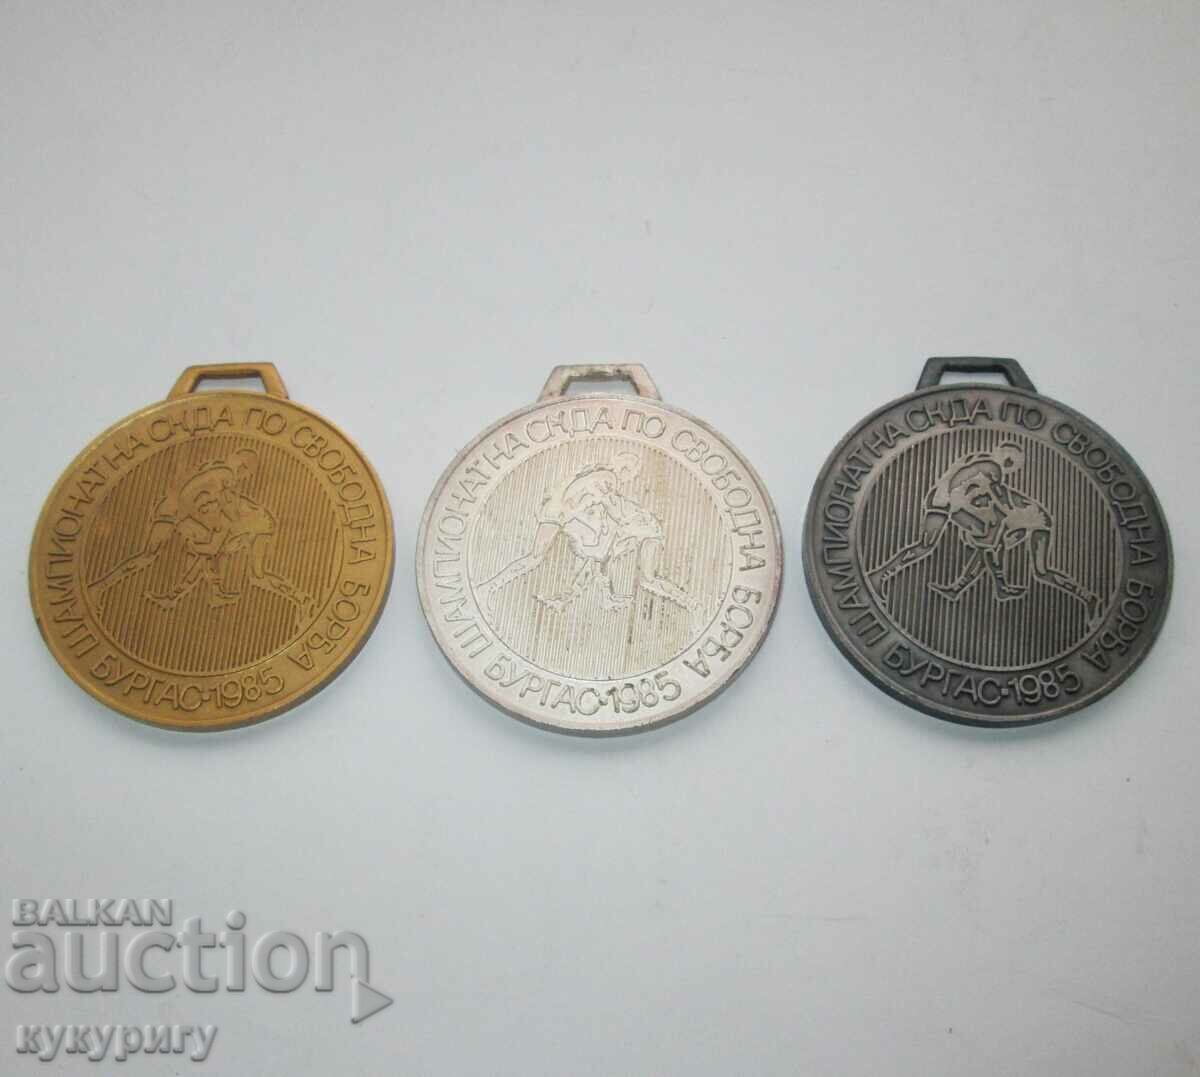 3 στρατιωτικά μετάλλια SKDA πρωτάθλημα ελεύθερης πάλης Μπουργκάς 1985